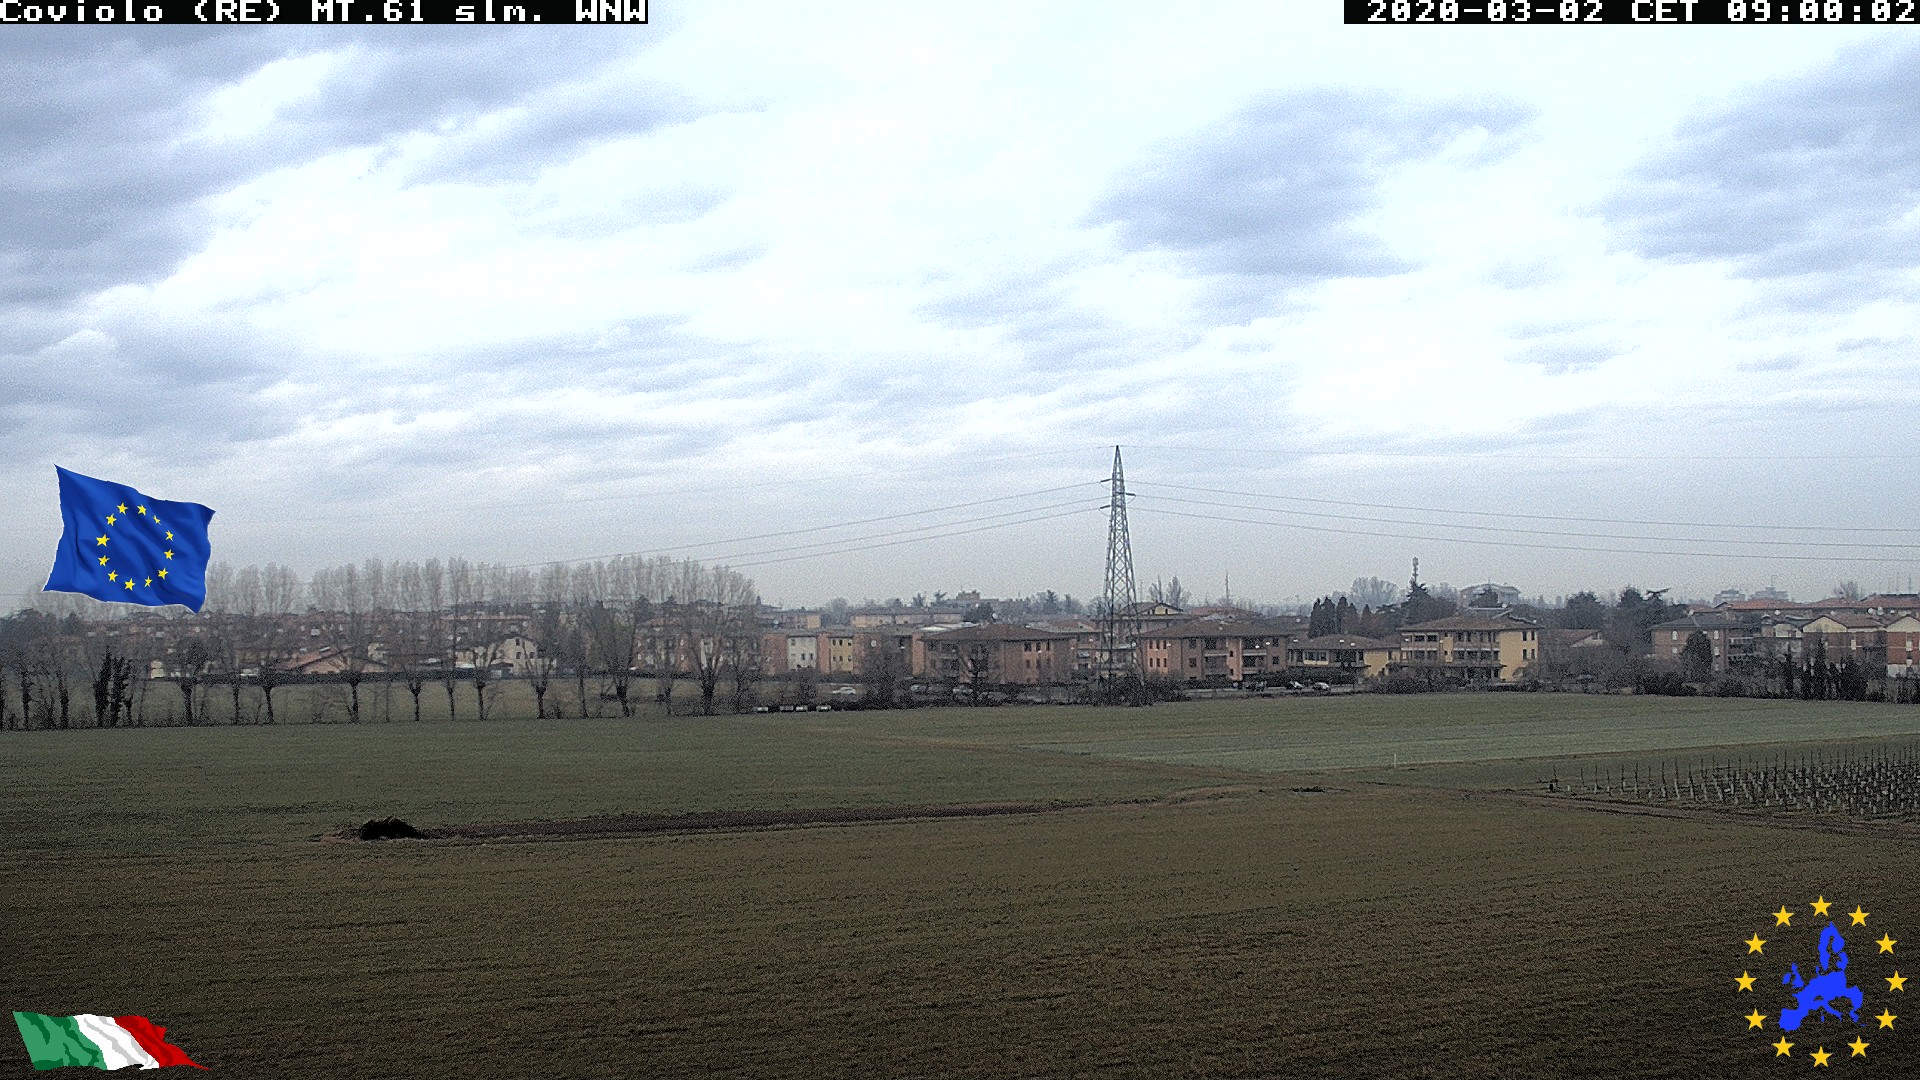 webcam Coviolo, Reggio Emilia (RE)